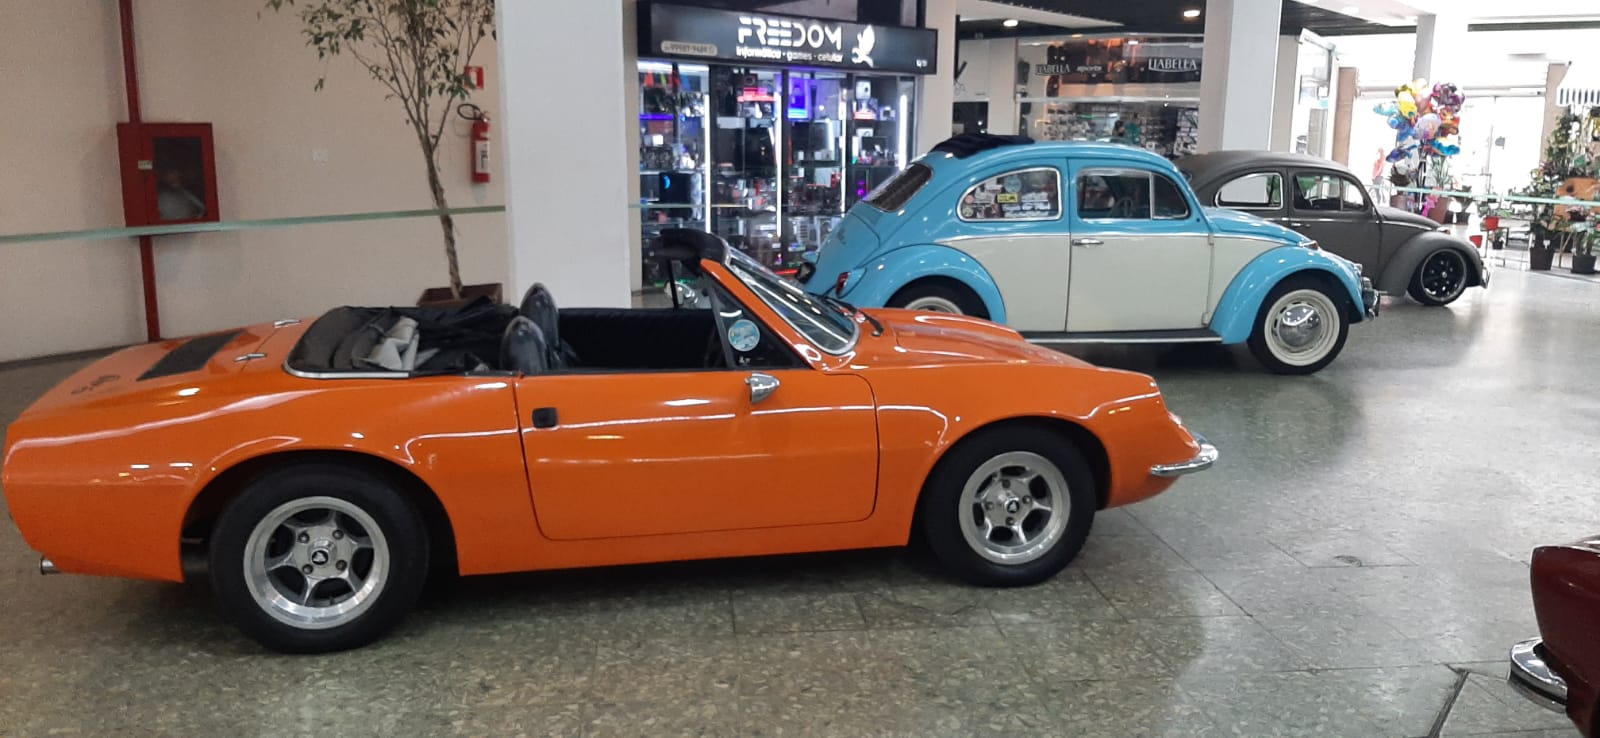 Petrópolis: final de semana com exposição de carros antigos e contação de histórias